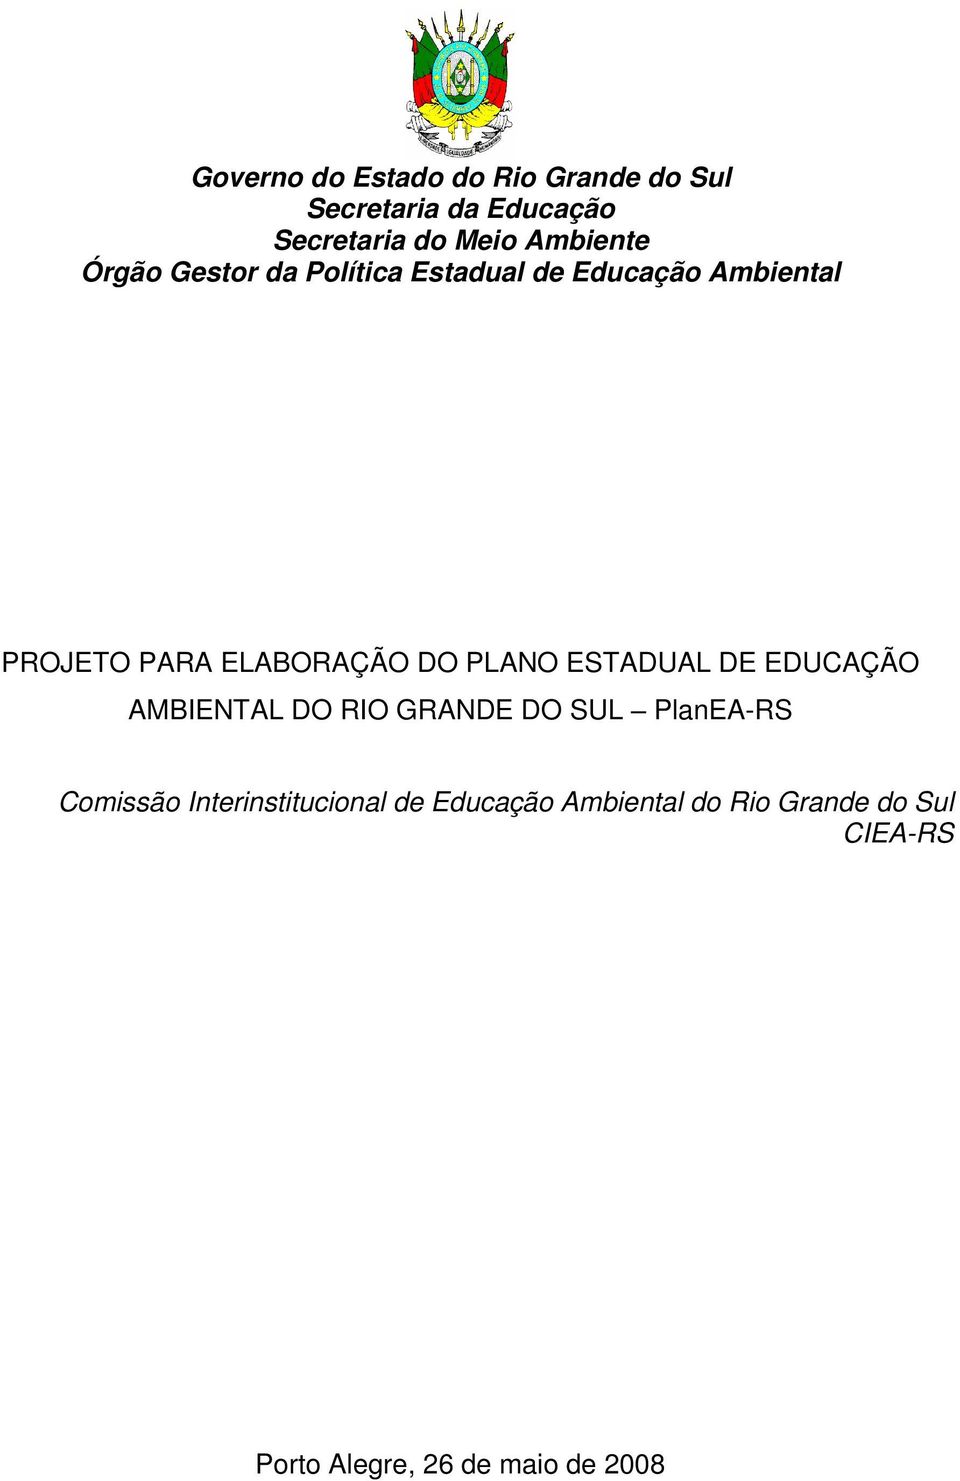 ELABORAÇÃO DO PLANO ESTADUAL DE EDUCAÇÃO AMBIENTAL DO RIO GRANDE DO SUL PlanEA-RS